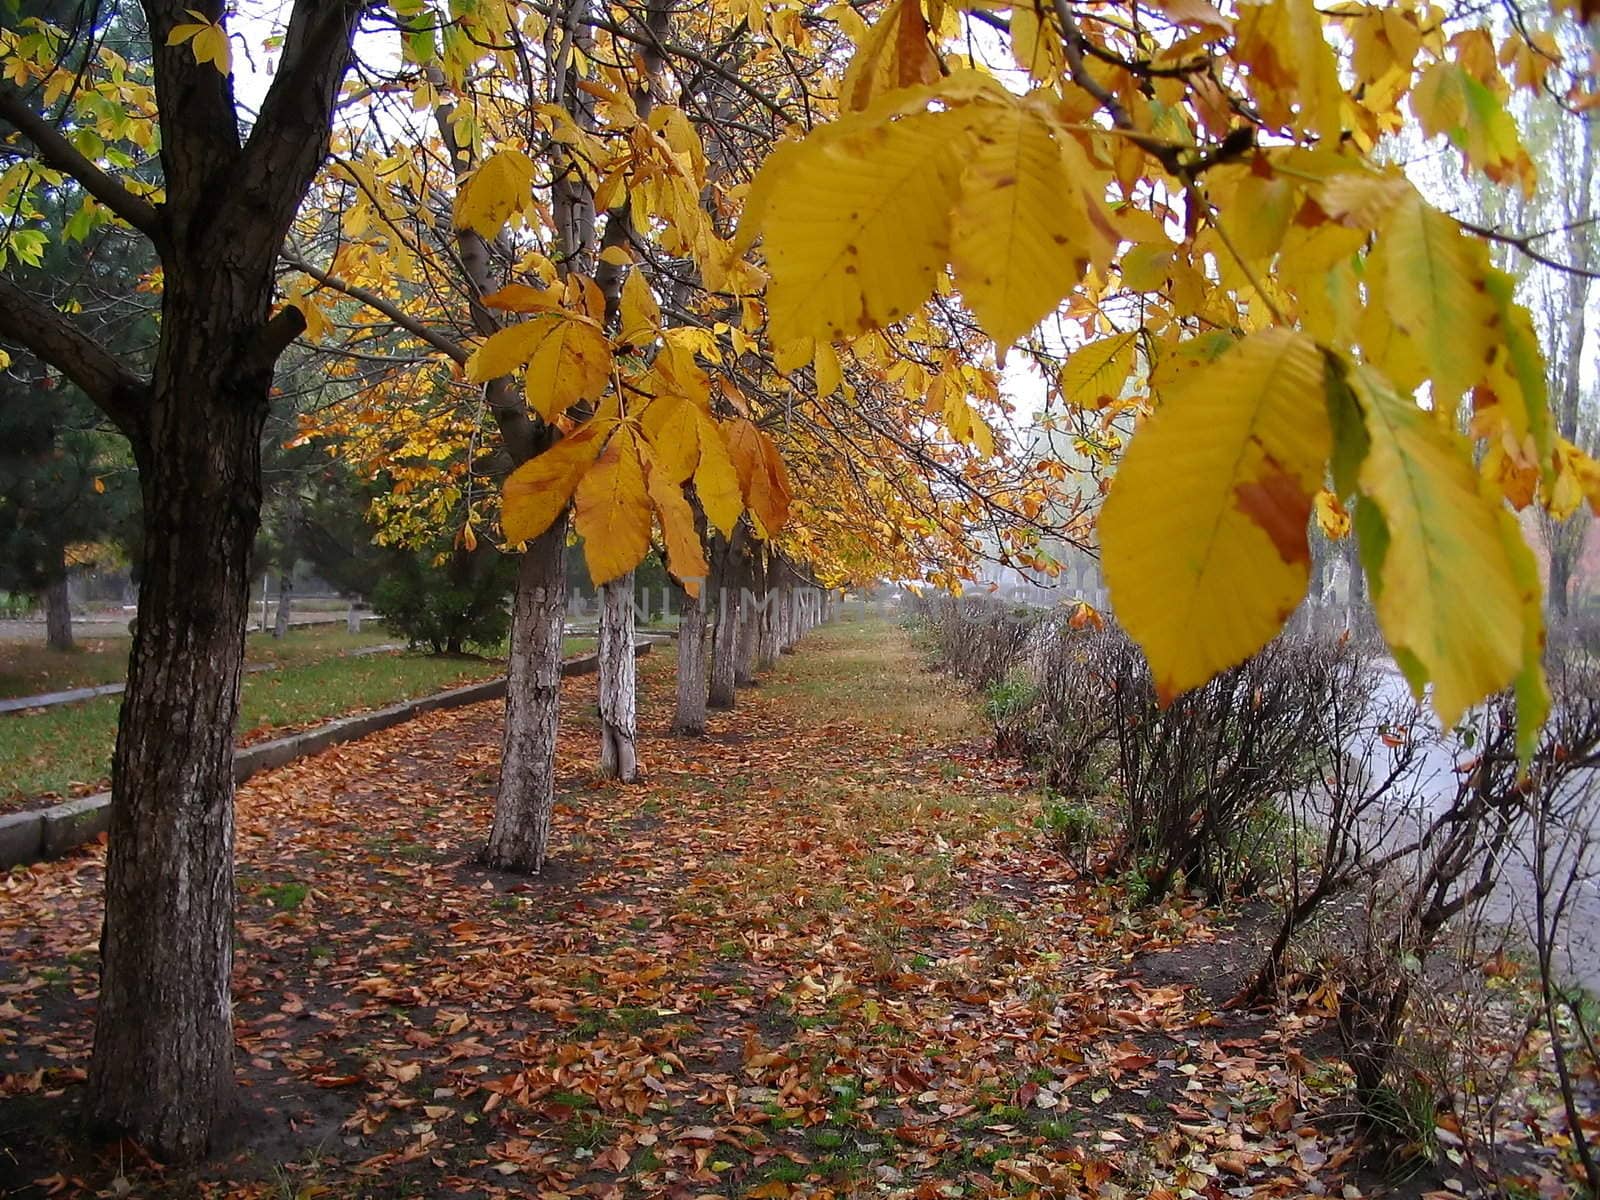 Autumn tree in park